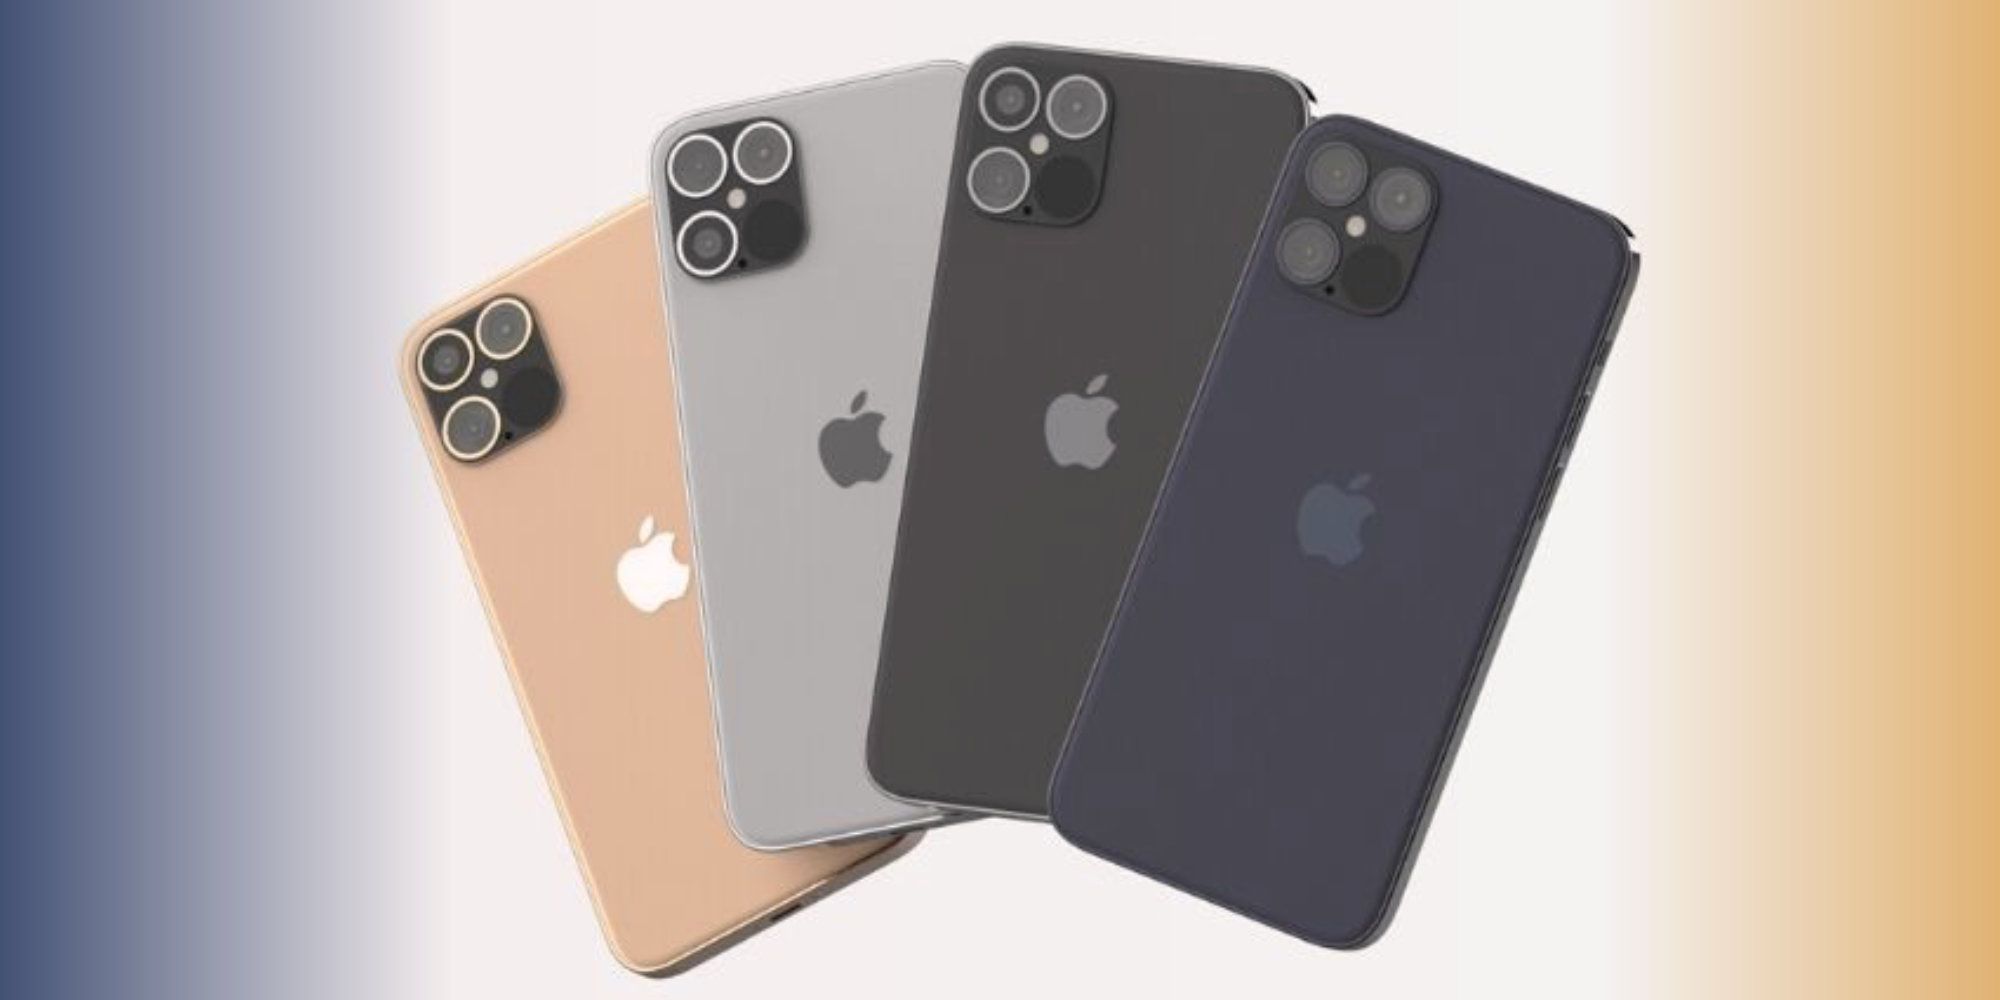 iPhone 12 Design Features Price & More Rumor & Leak Roundup